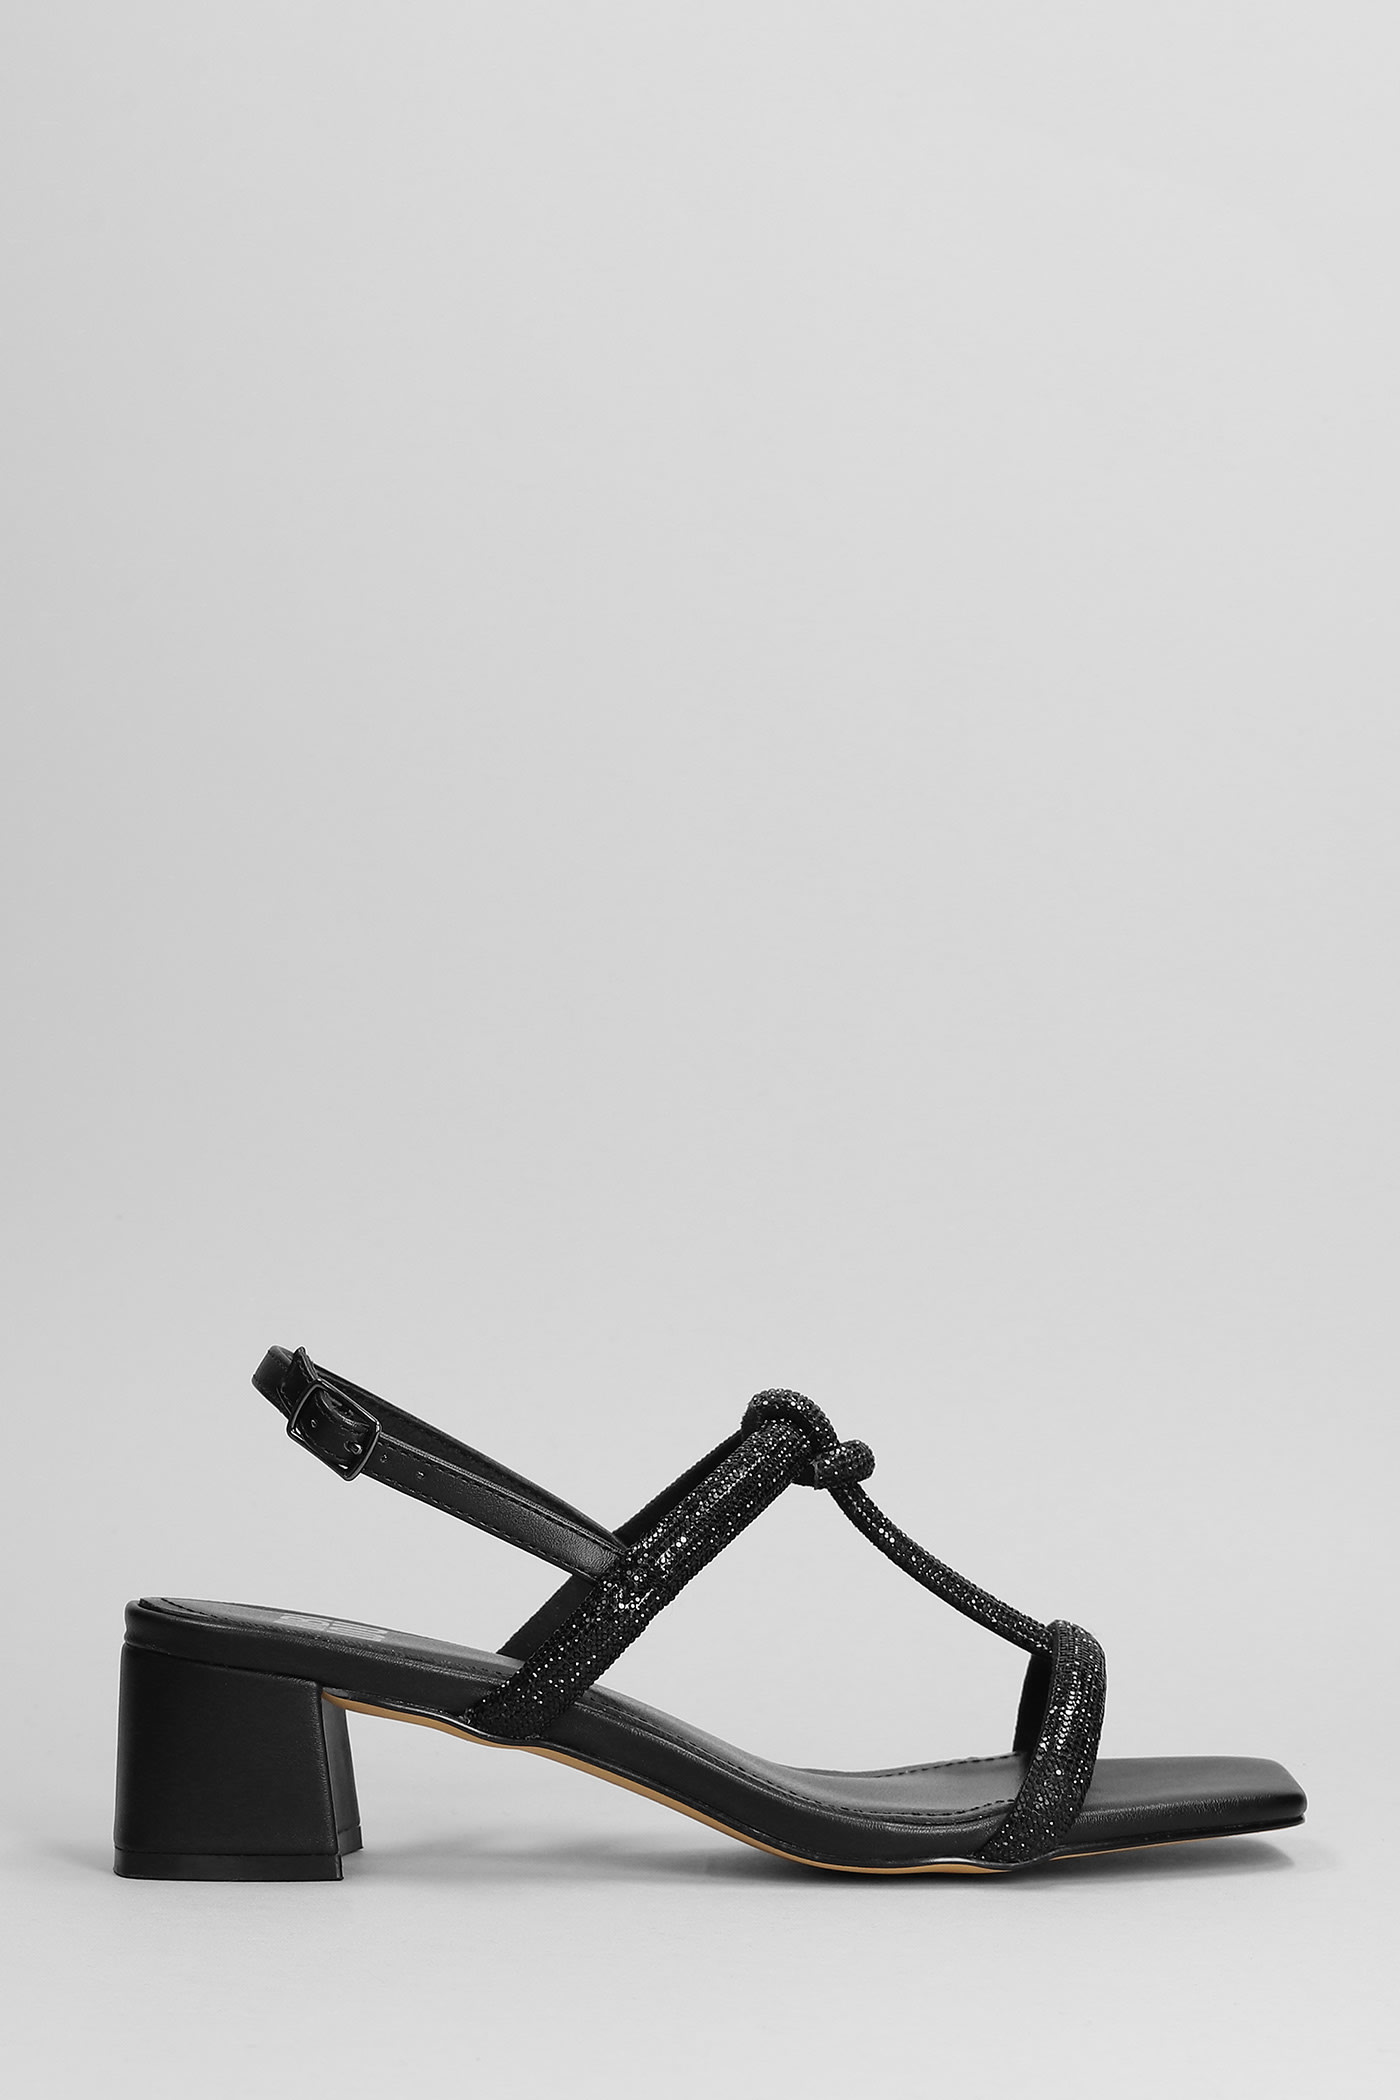 Bibi Lou Sandals In Black Leather